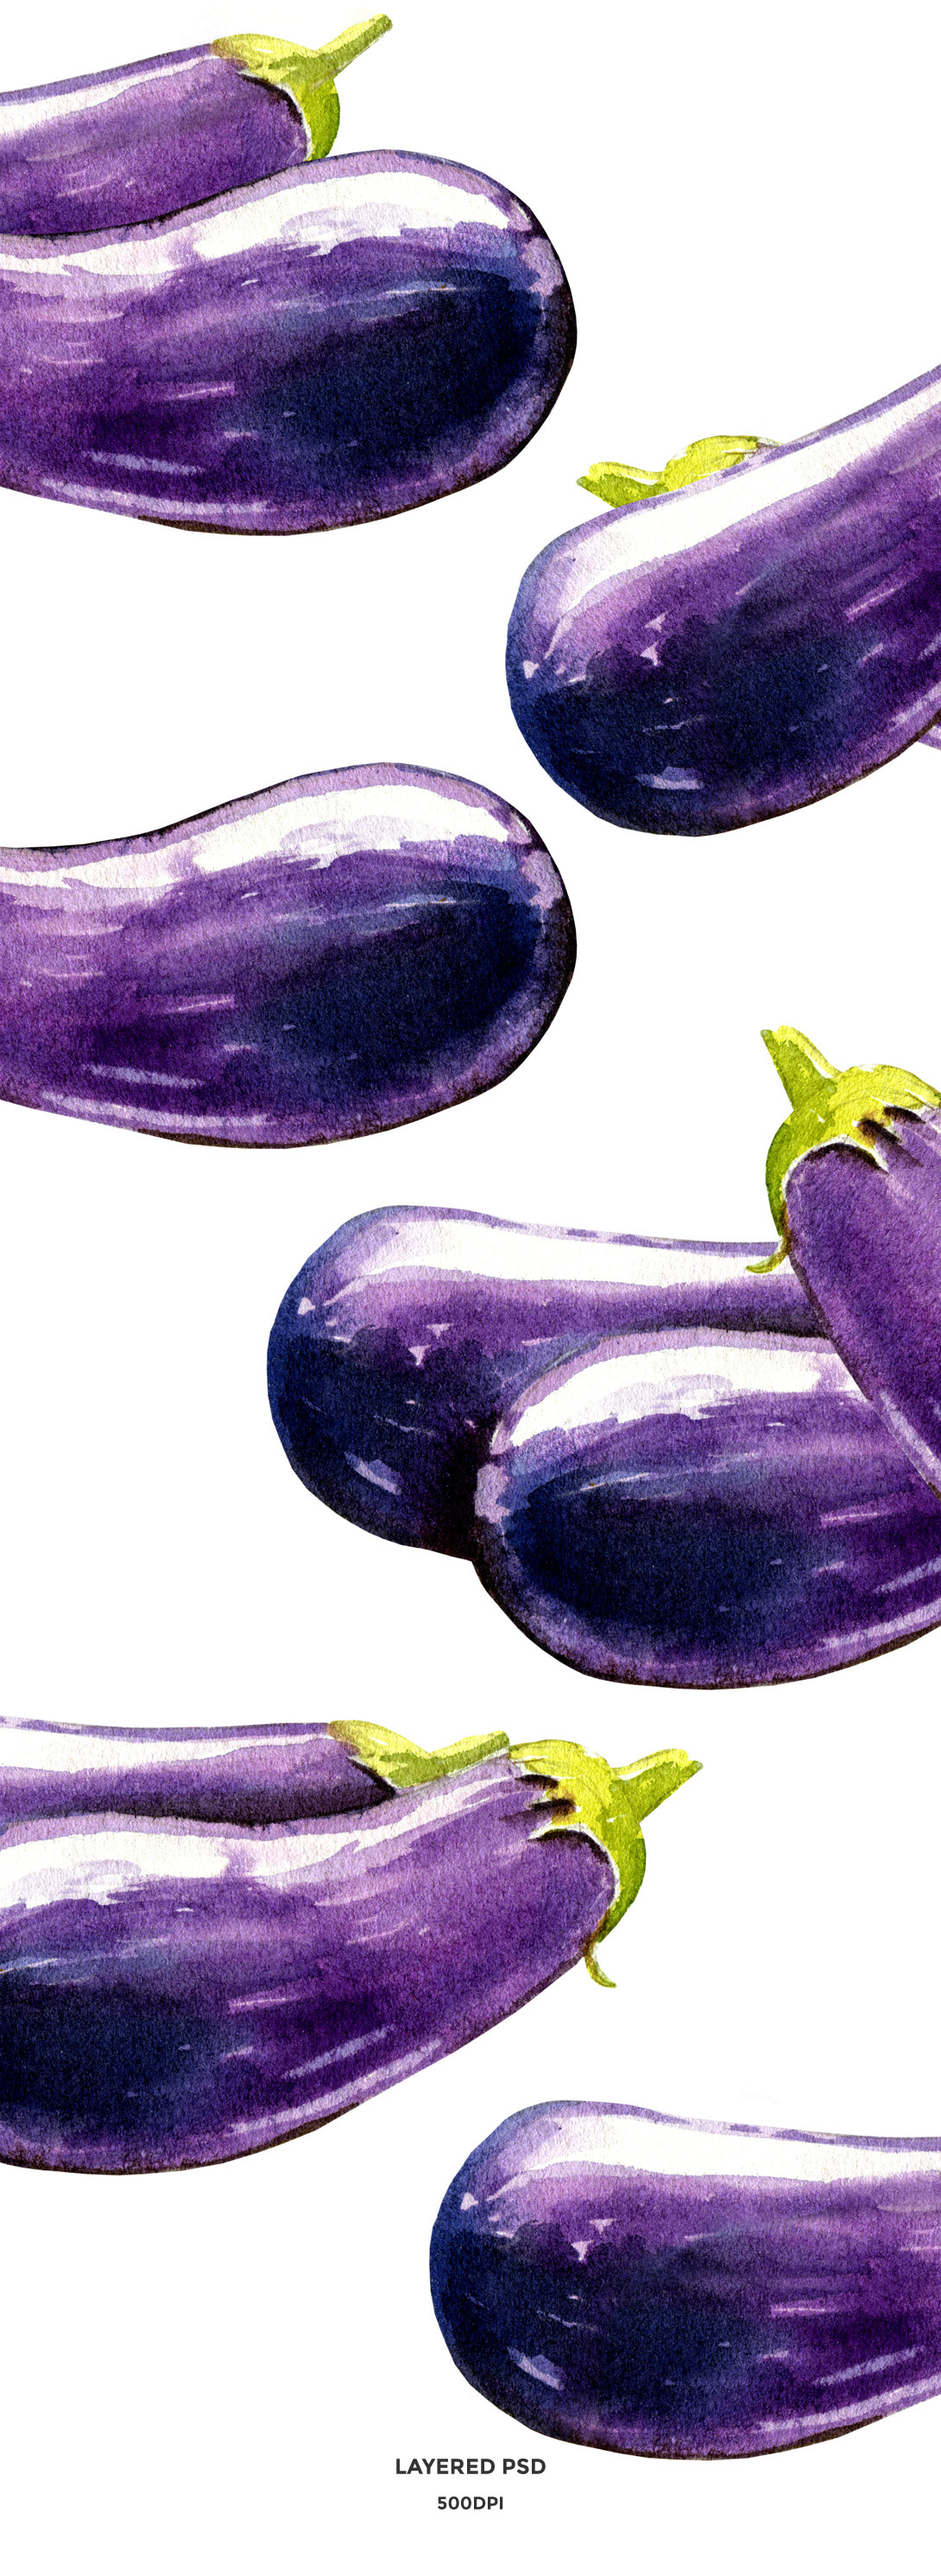 eggplant eggplant watercolor eggplant illustration eggplant isolated eggplant psd vegetable watercolor food watercolor food illustration vegetable illustration